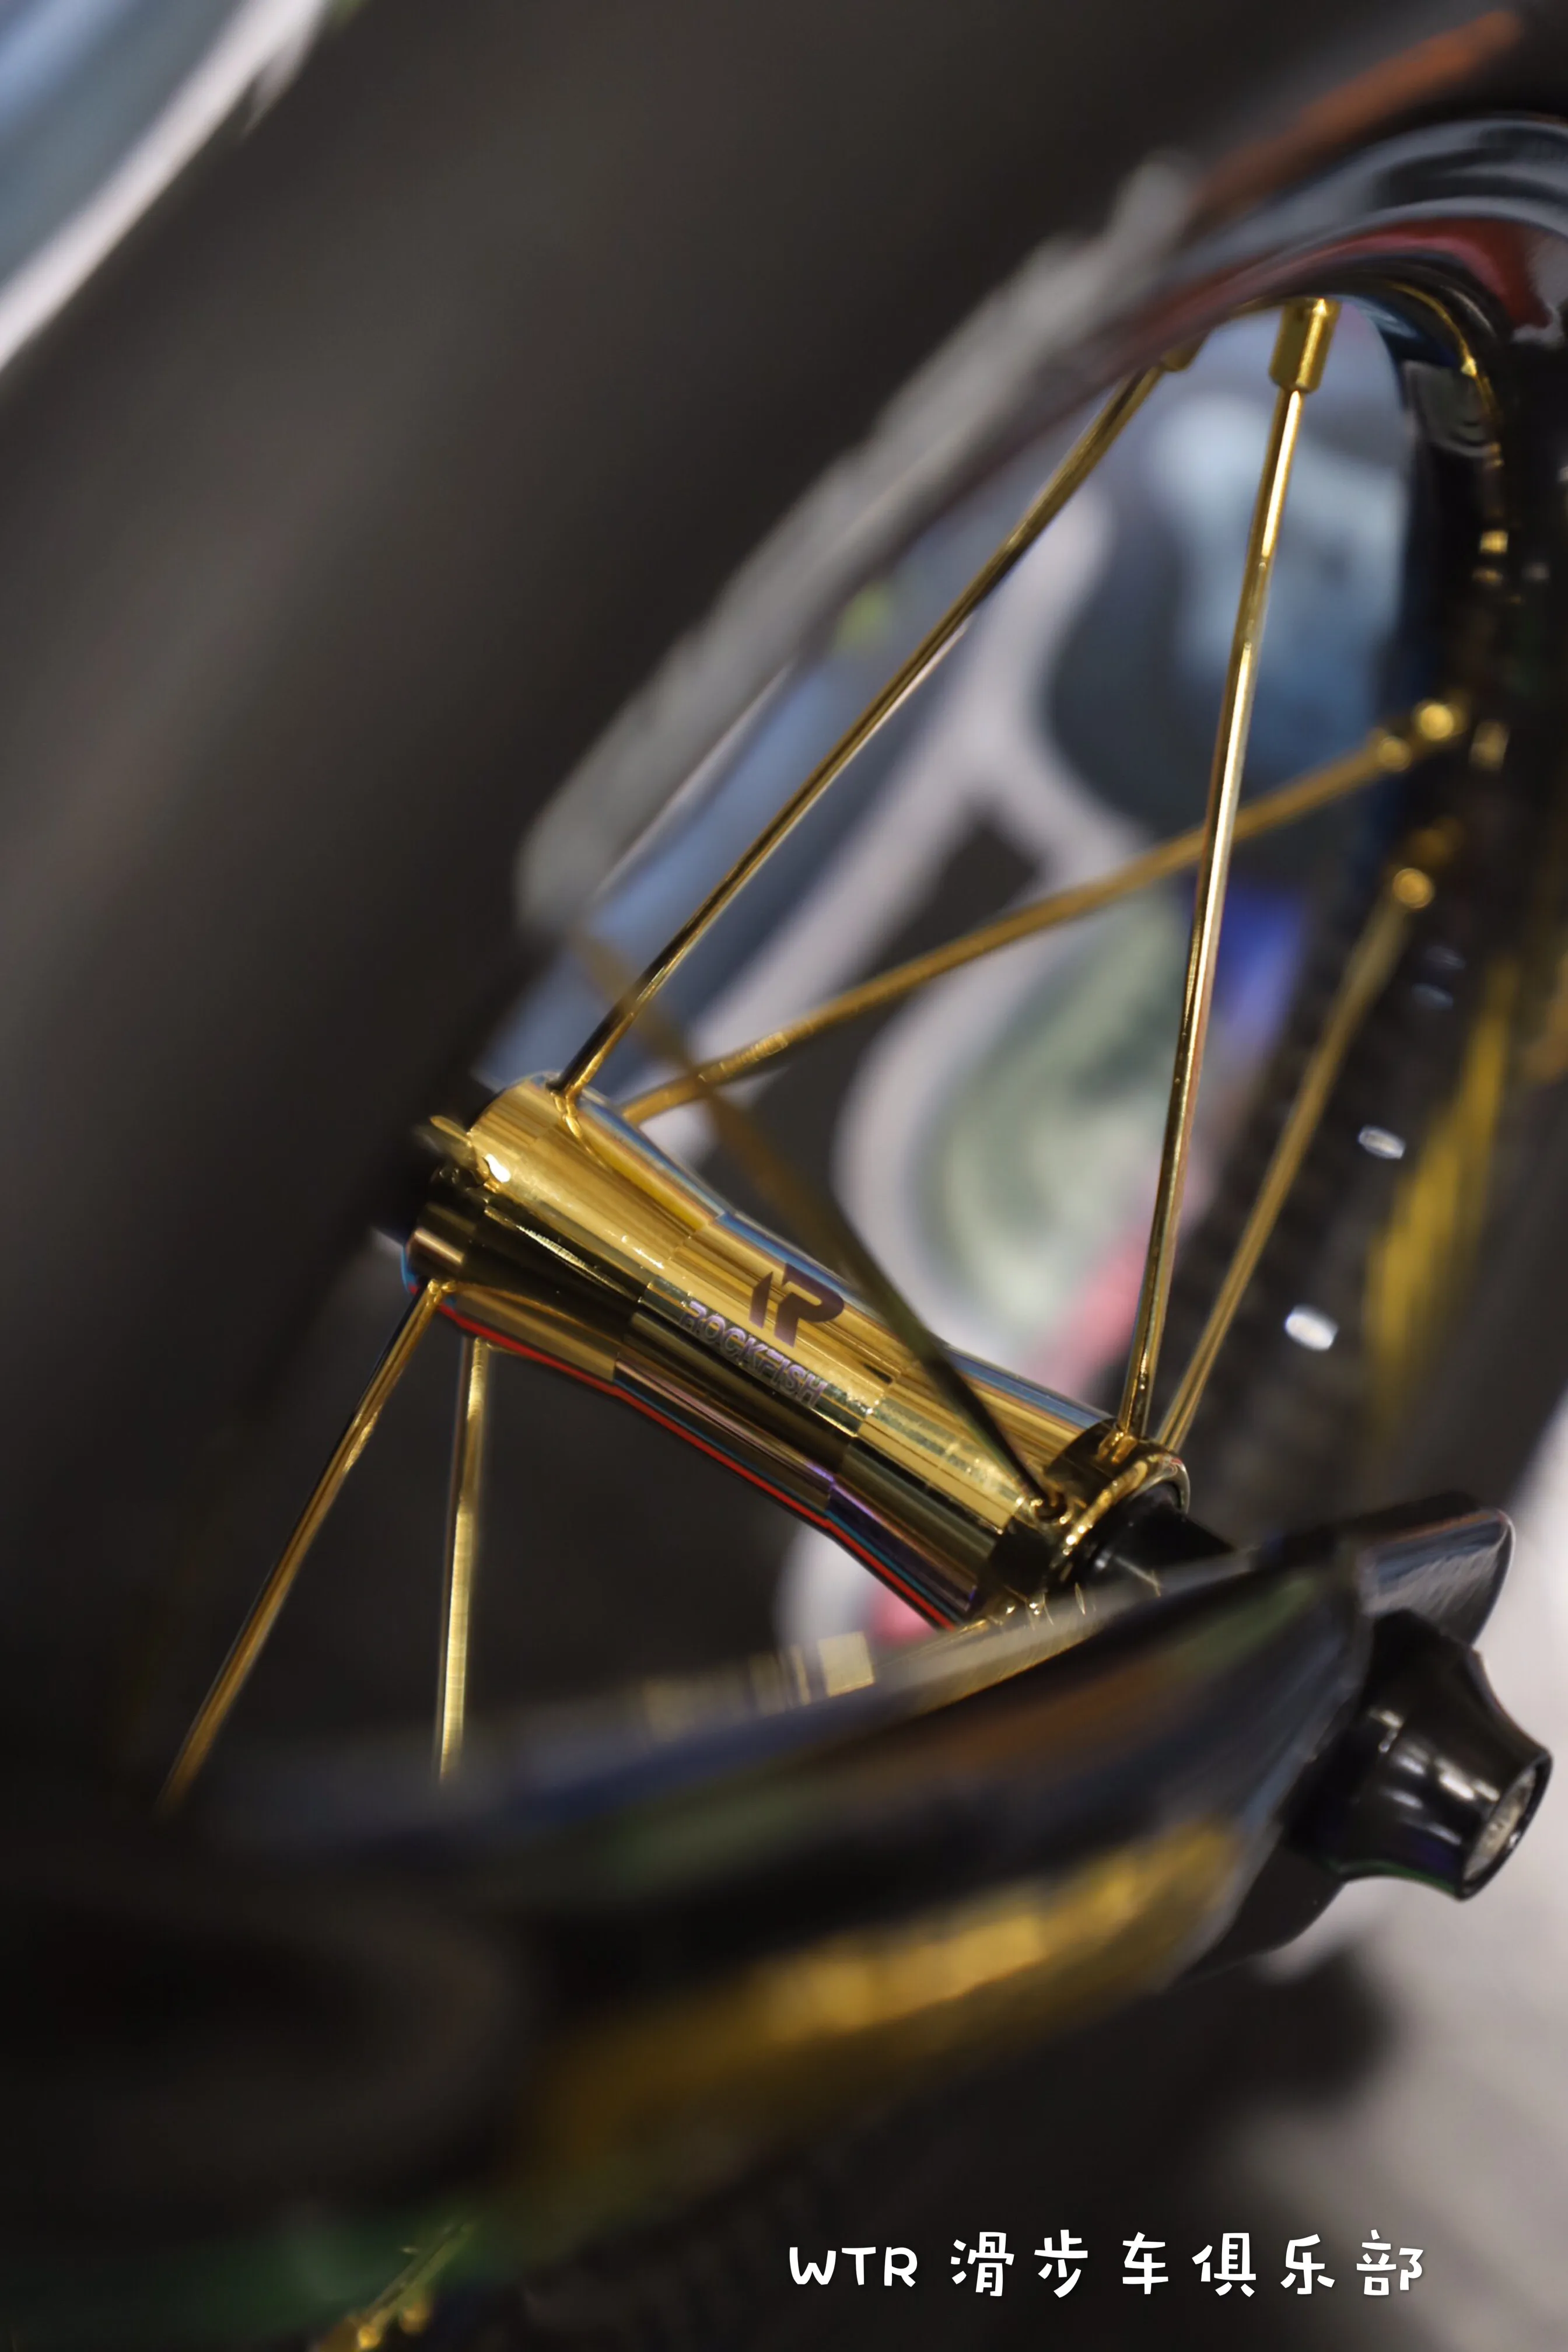 12 дюймов углеродное волокно велосипед набор колес для детей балансировочный велосипед для раздвижных гоночных соревнований светильник вес Углеродные колеса